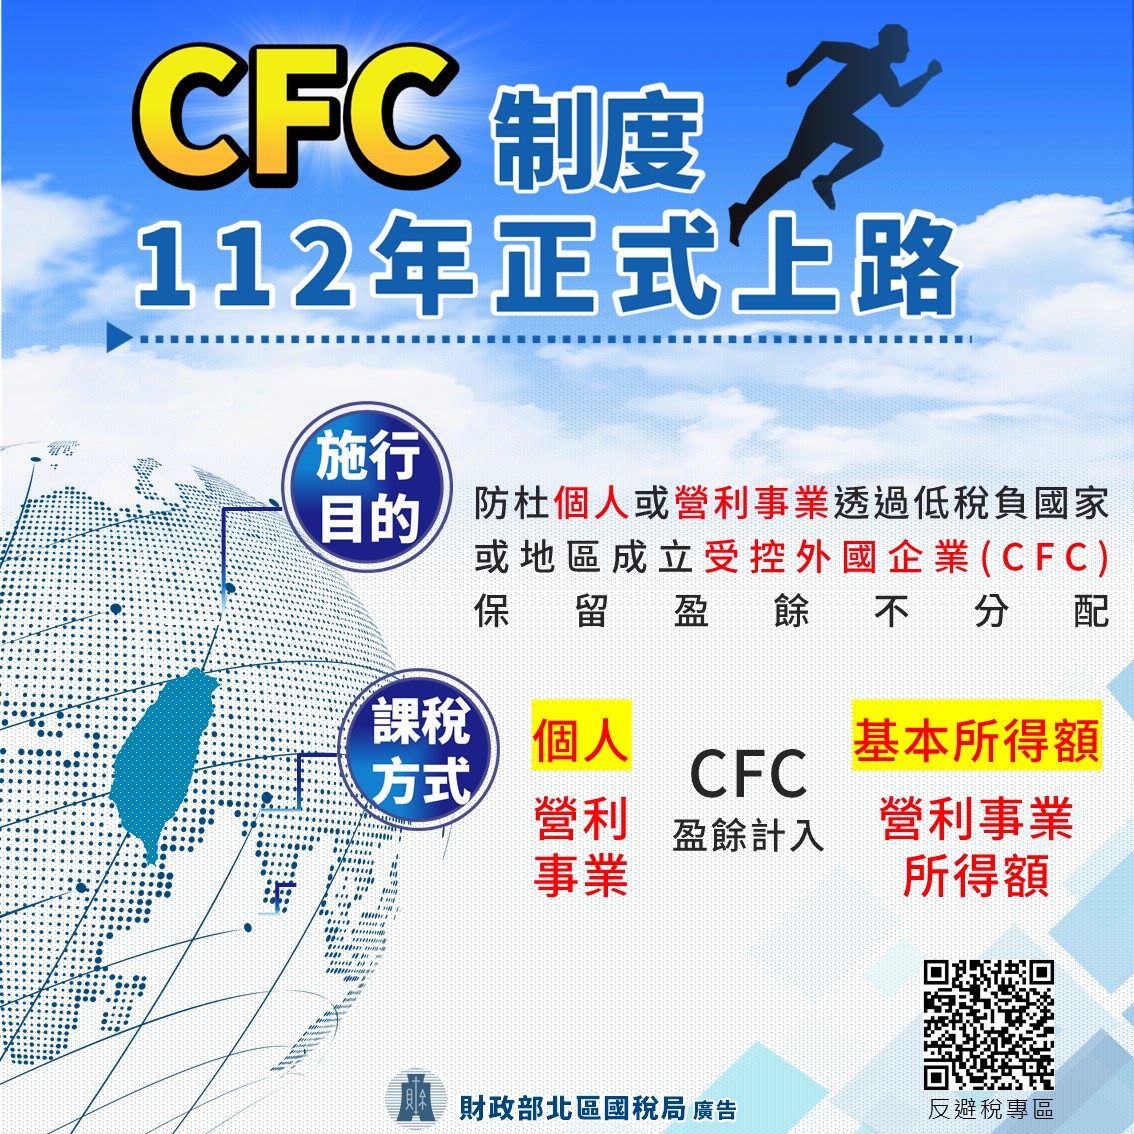 CFC制度112年正式上路